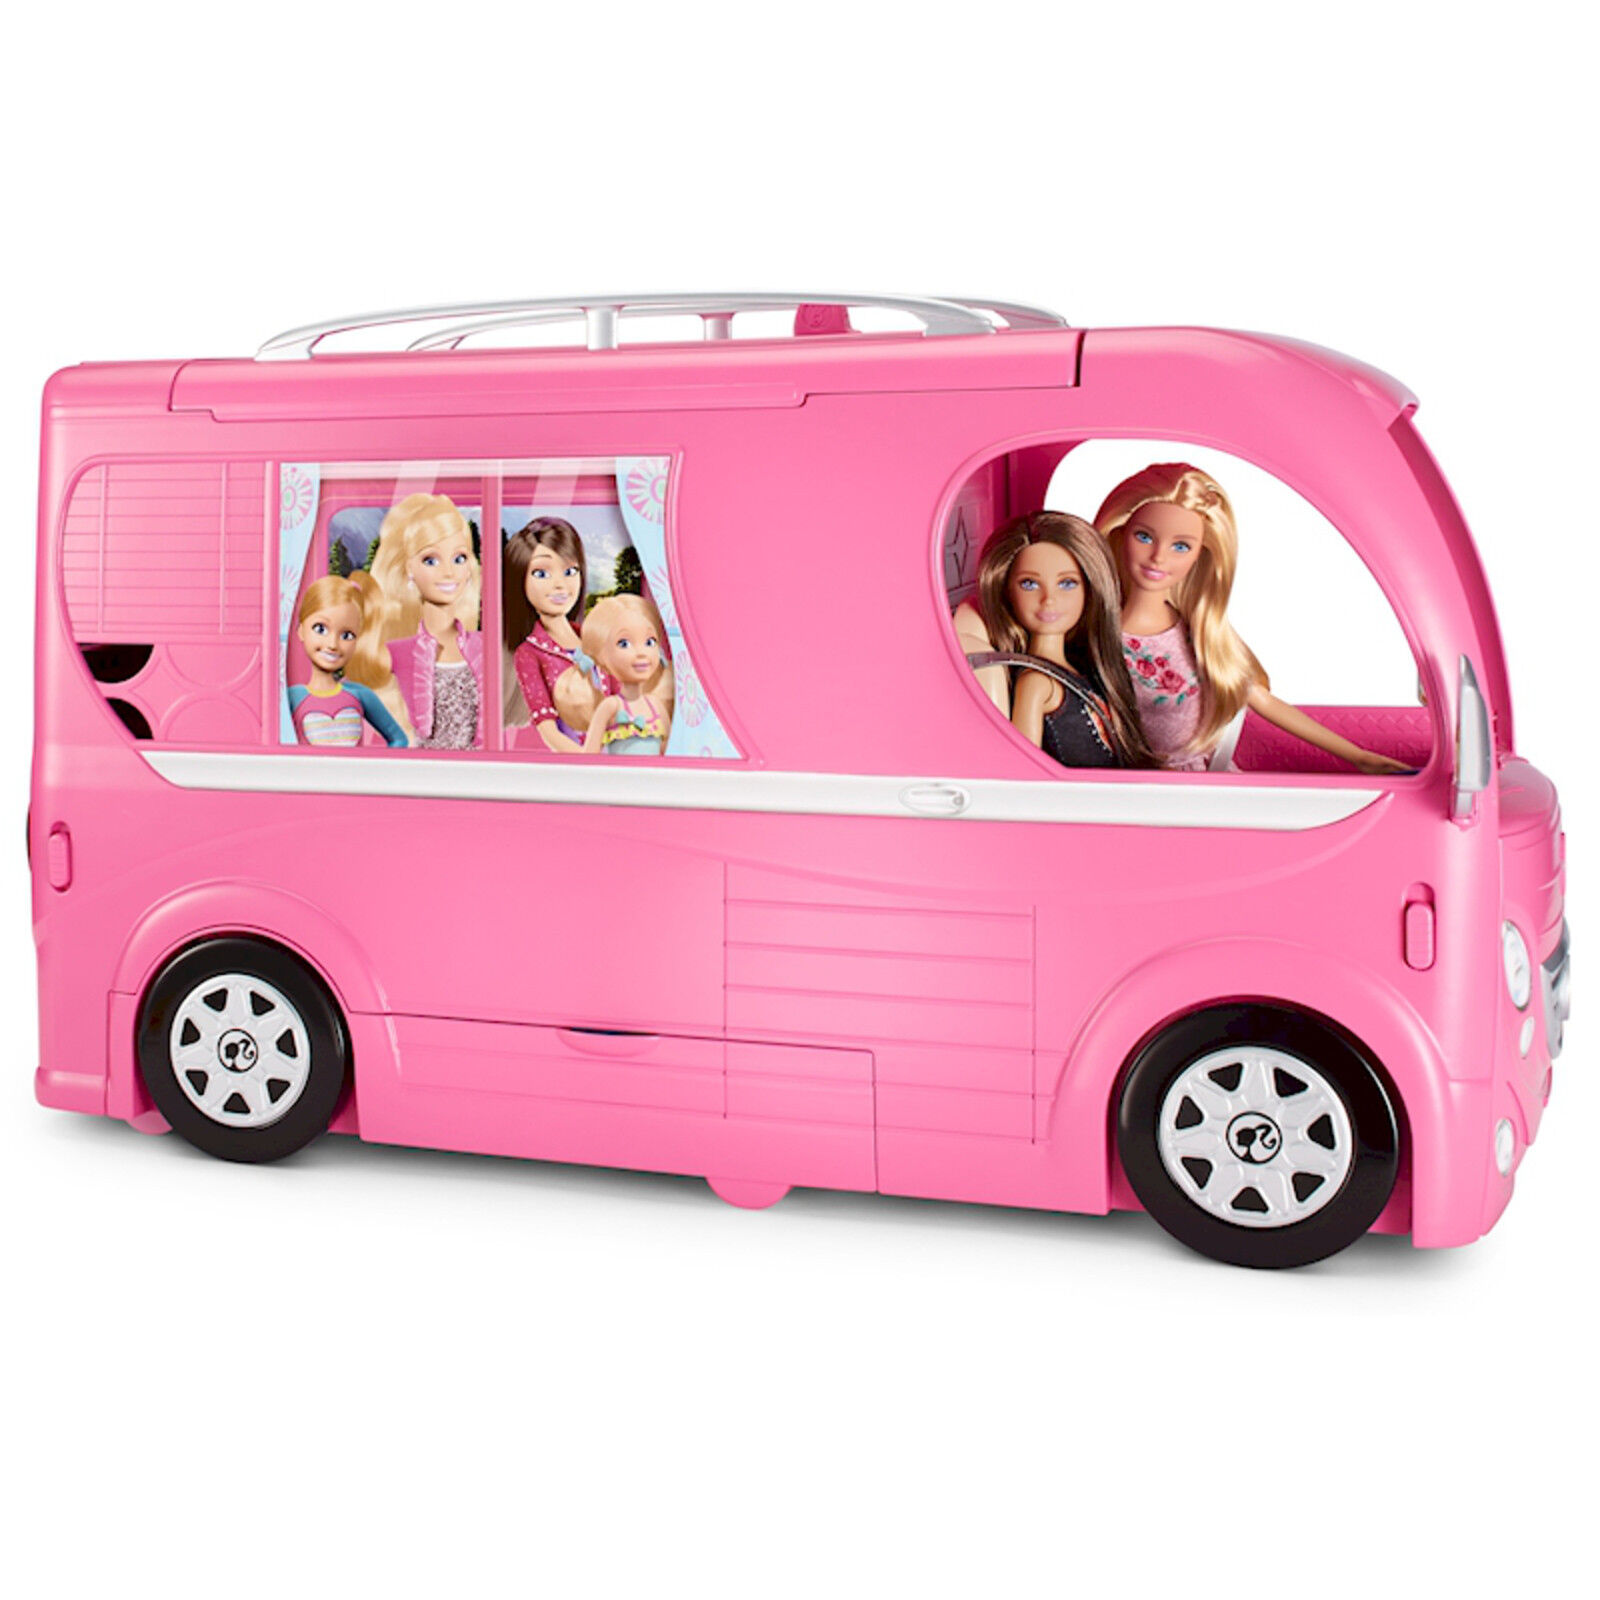 niezen binnenkort jeugd New Mattel Barbie Pop Up Popup Camper 3 Levels Pink RV Bus Home Van Truck  Set 634154125441 | eBay